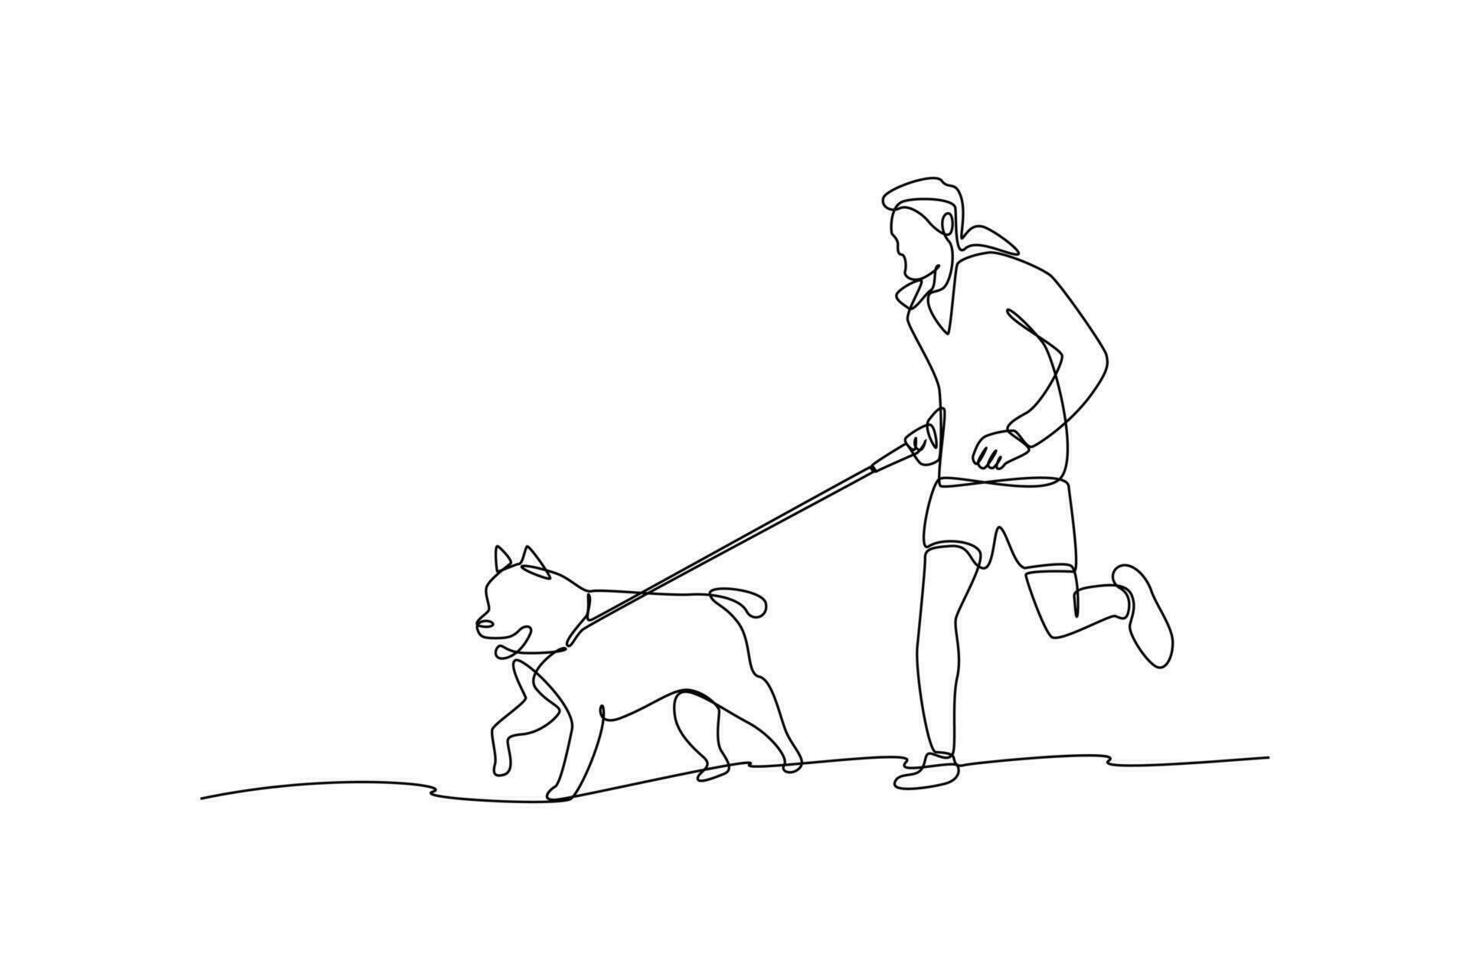 Célibataire une ligne dessin une homme fonctionnement avec le sien chien. Urbain animal de compagnie concept. continu ligne dessiner conception graphique vecteur illustration.